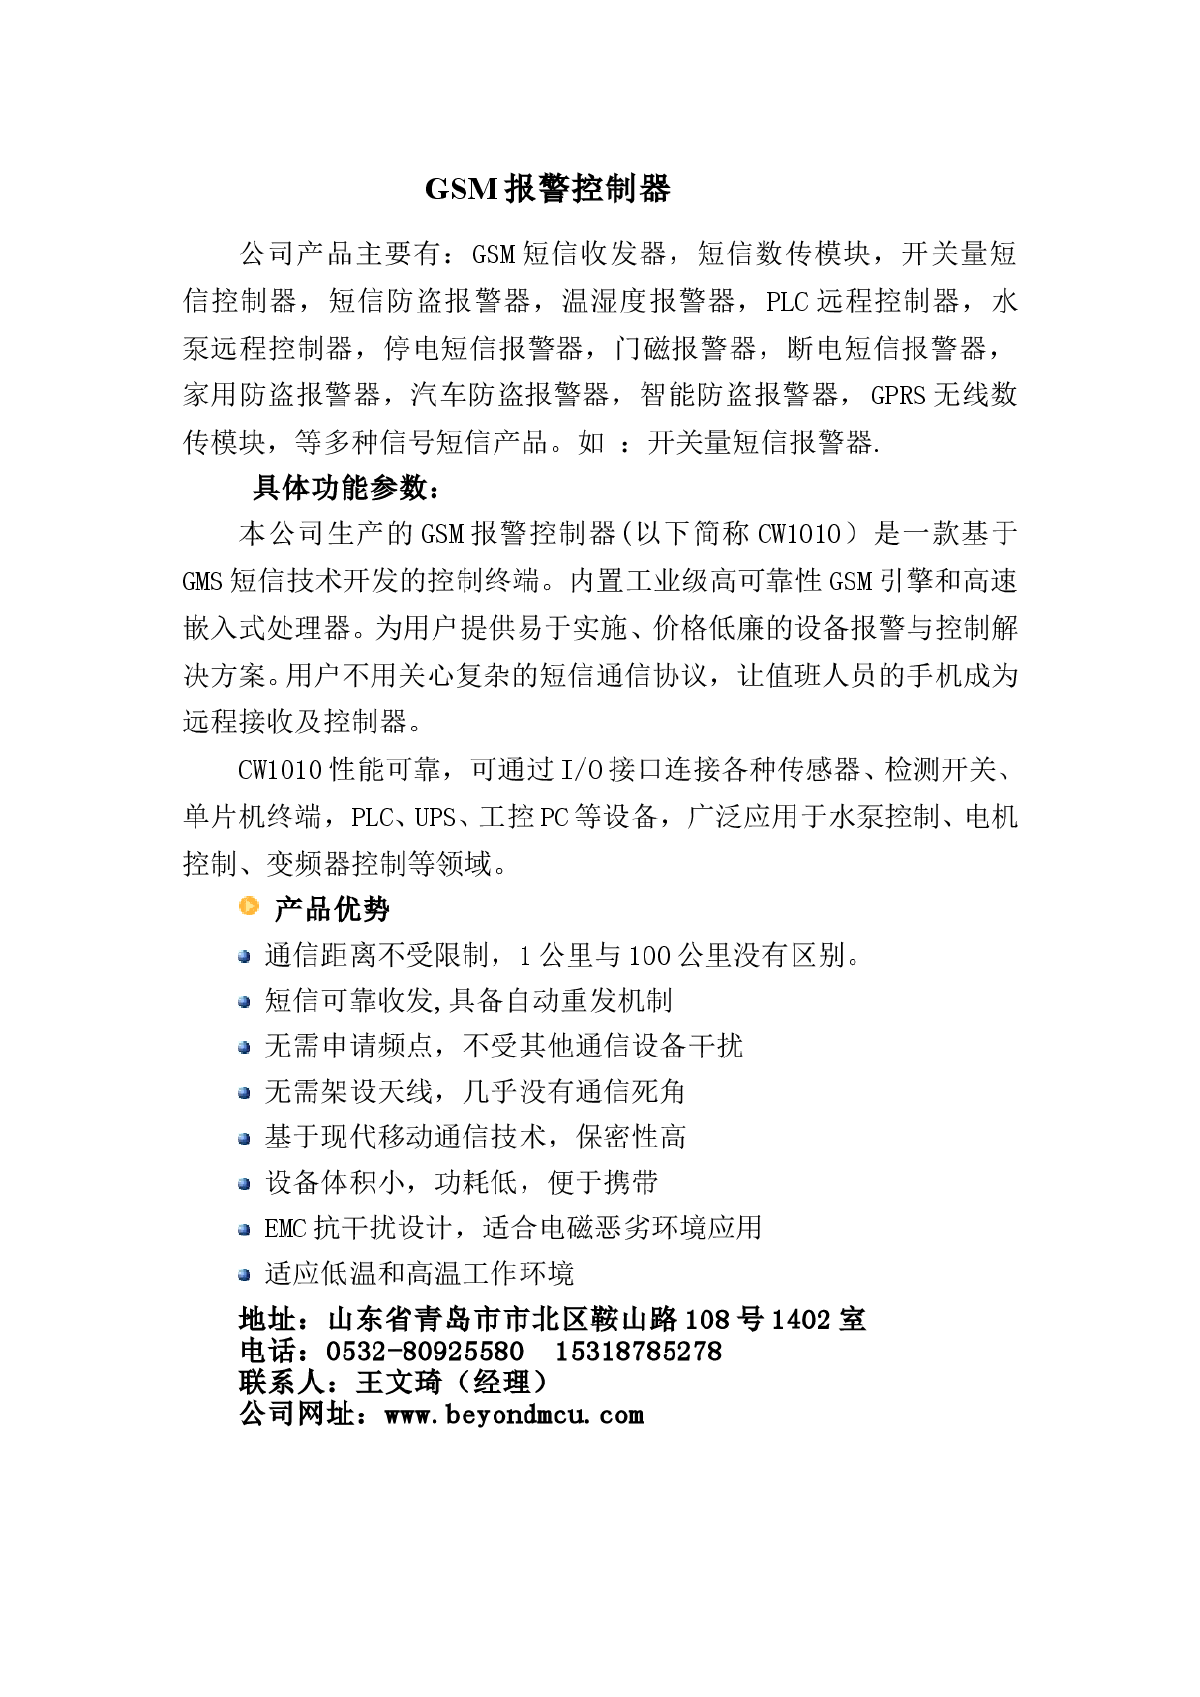 青岛京城超微GSM报警控制器 